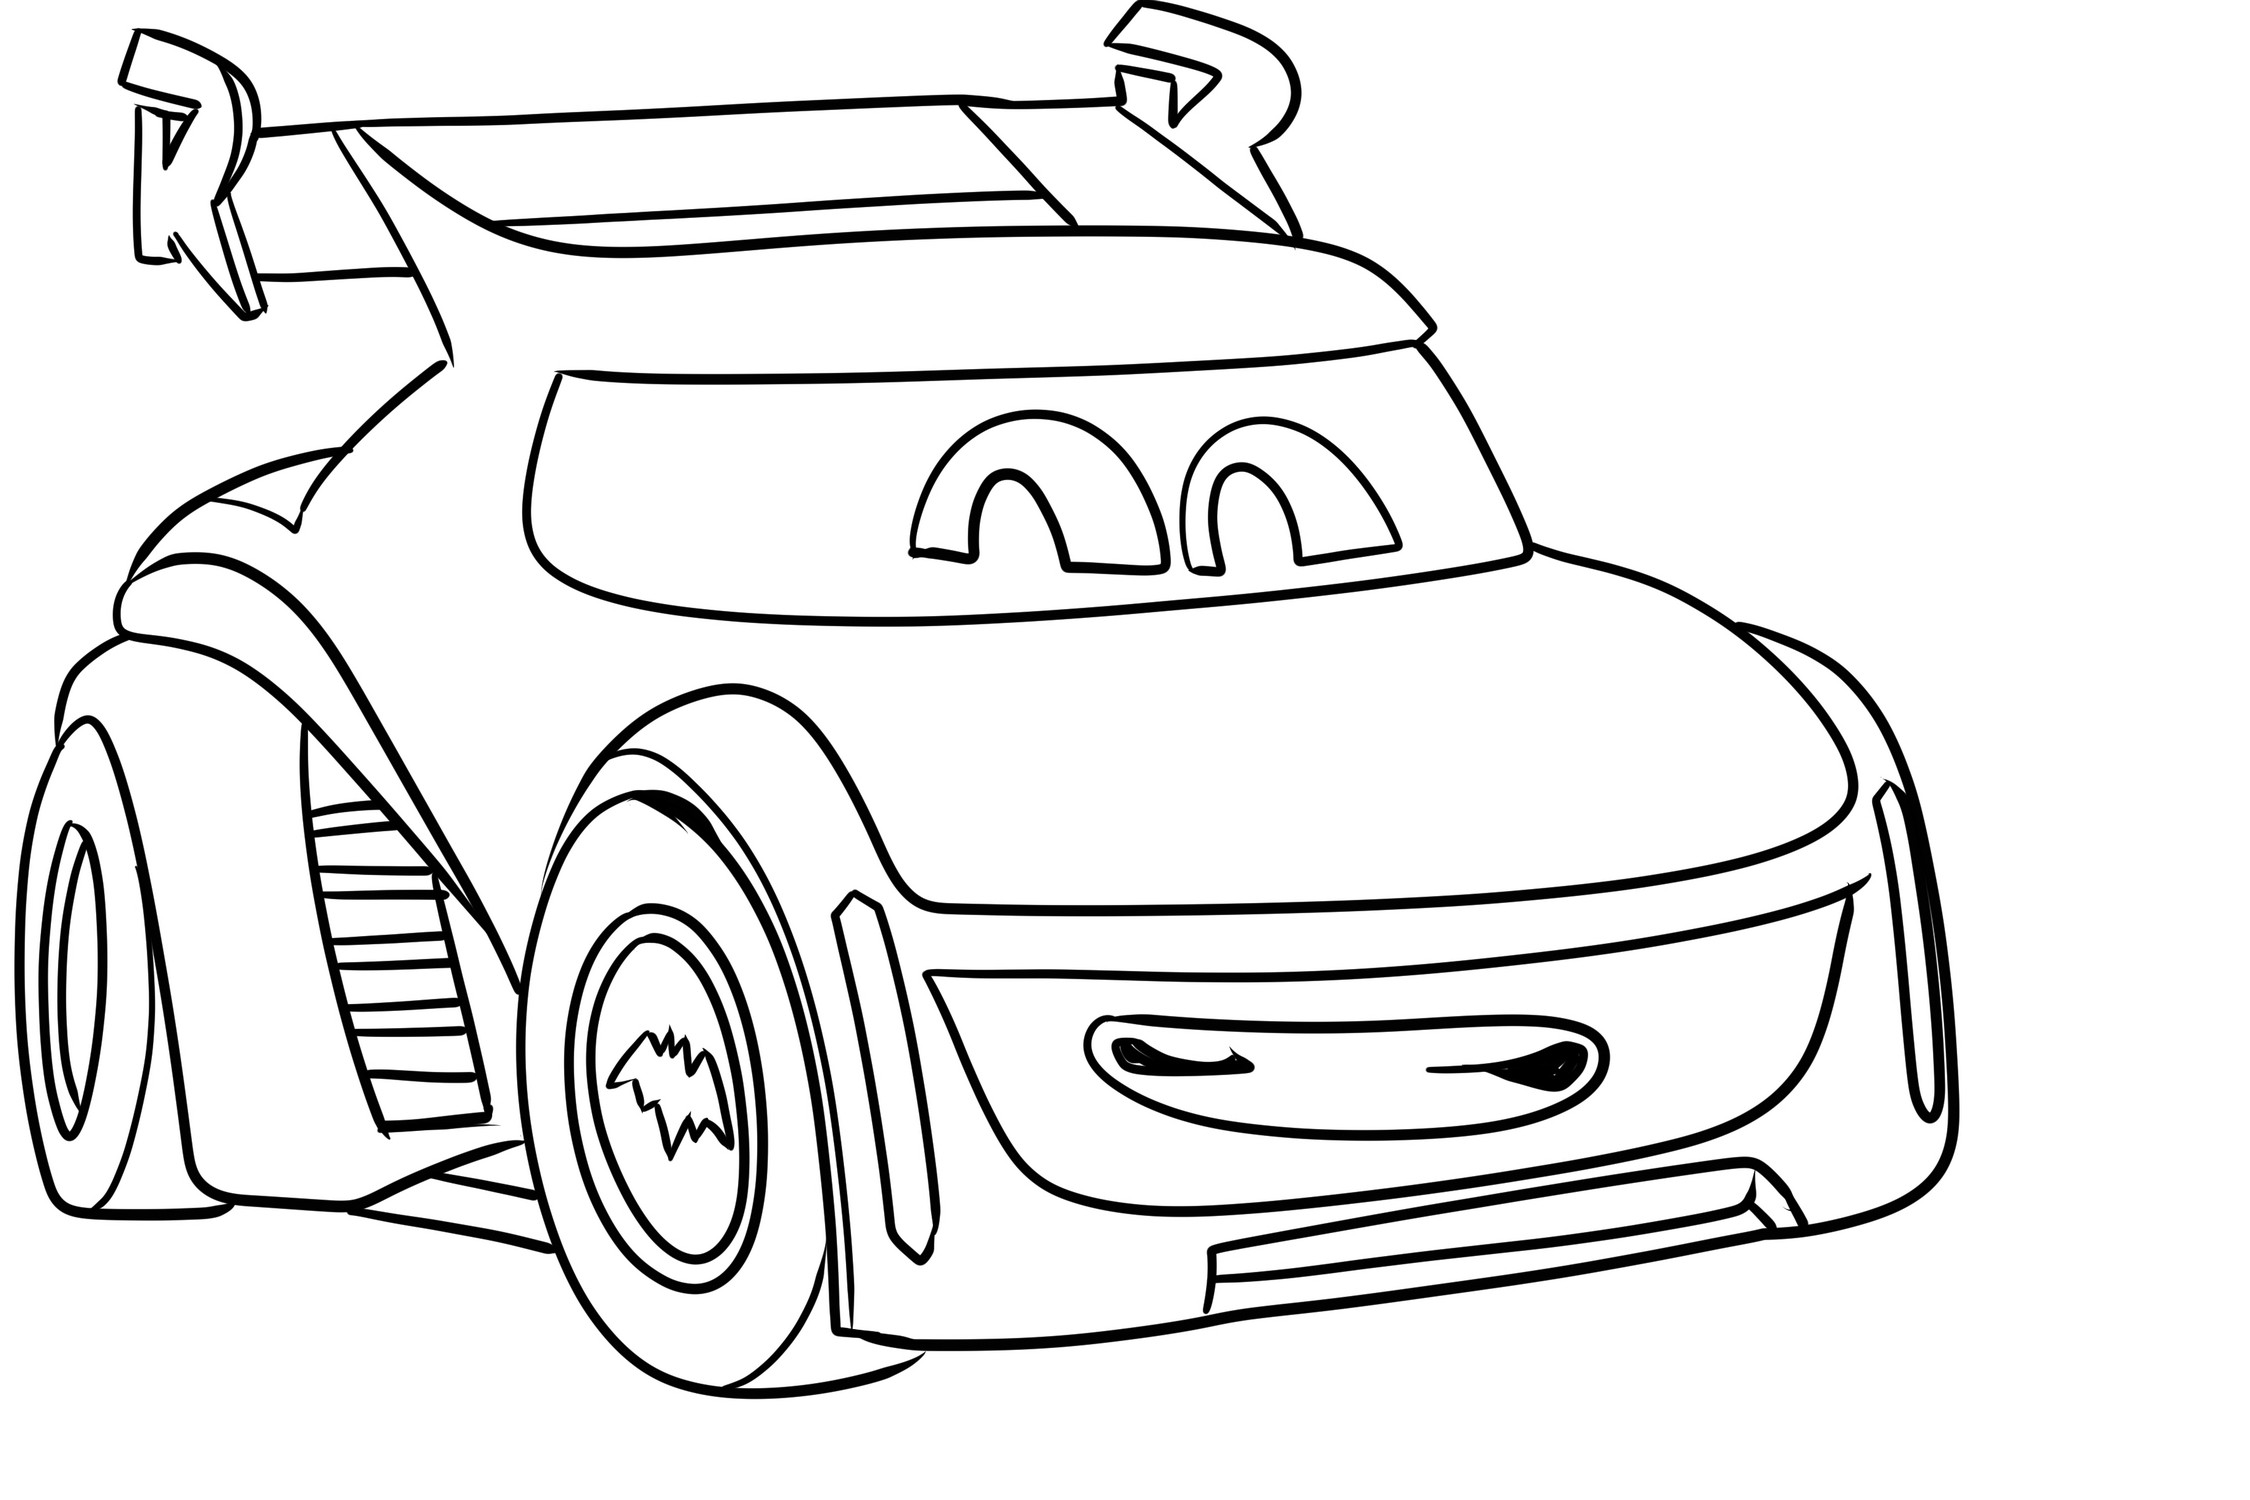 Página de Redbird (el auto deportivo de Robin) de Batwheels para imprimir y colorear